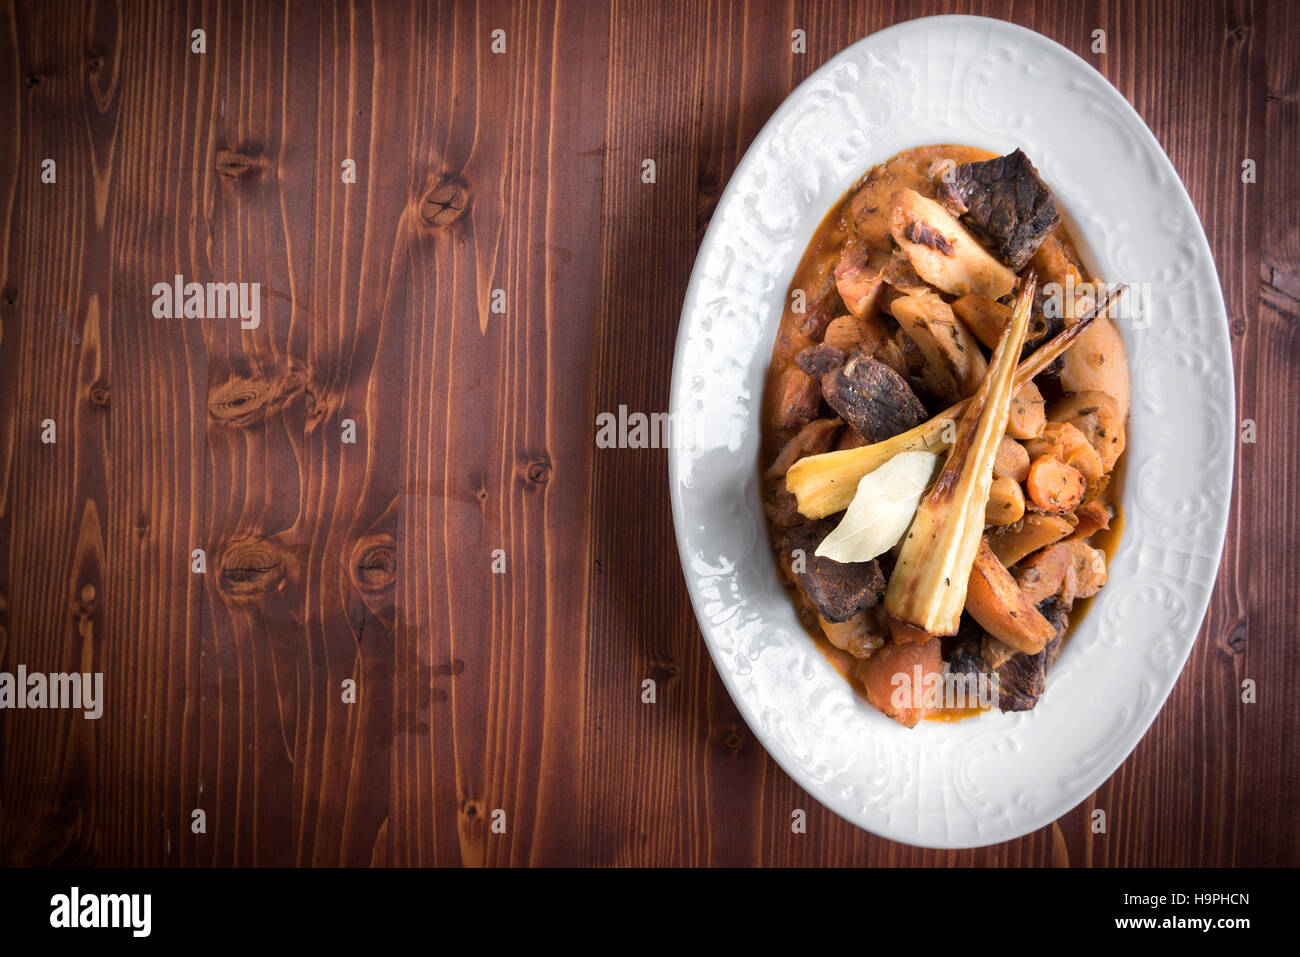 La viande de boeuf servi avec pommes de terre au four dans un restaurant, l'espace vide Banque D'Images